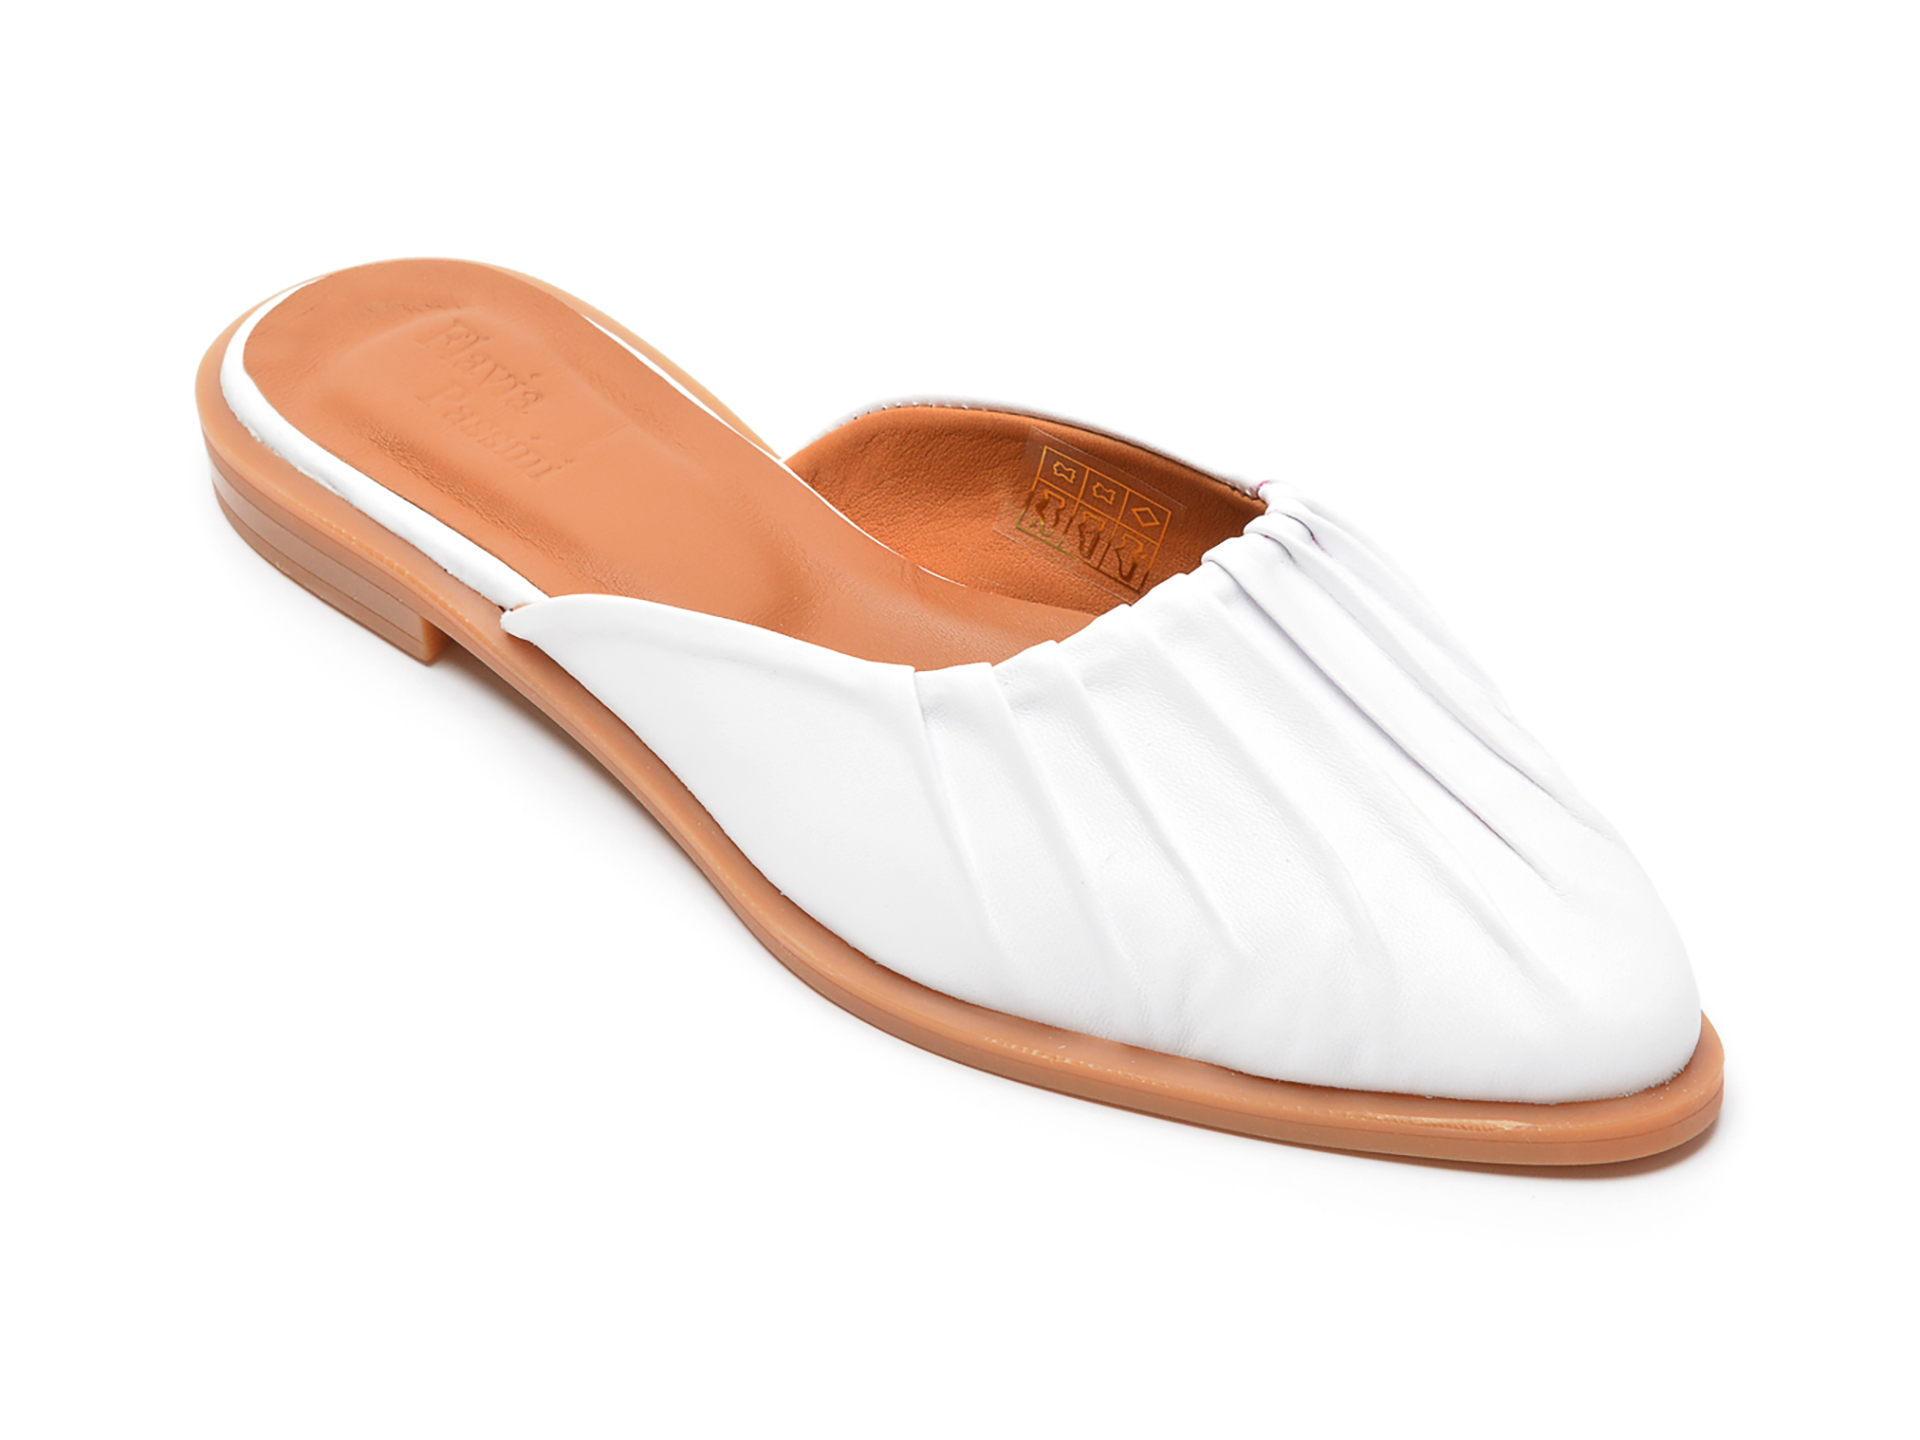 Papuci FLAVIA PASSINI albi, 22170, din piele naturala Flavia Passini imagine 2022 13clothing.ro